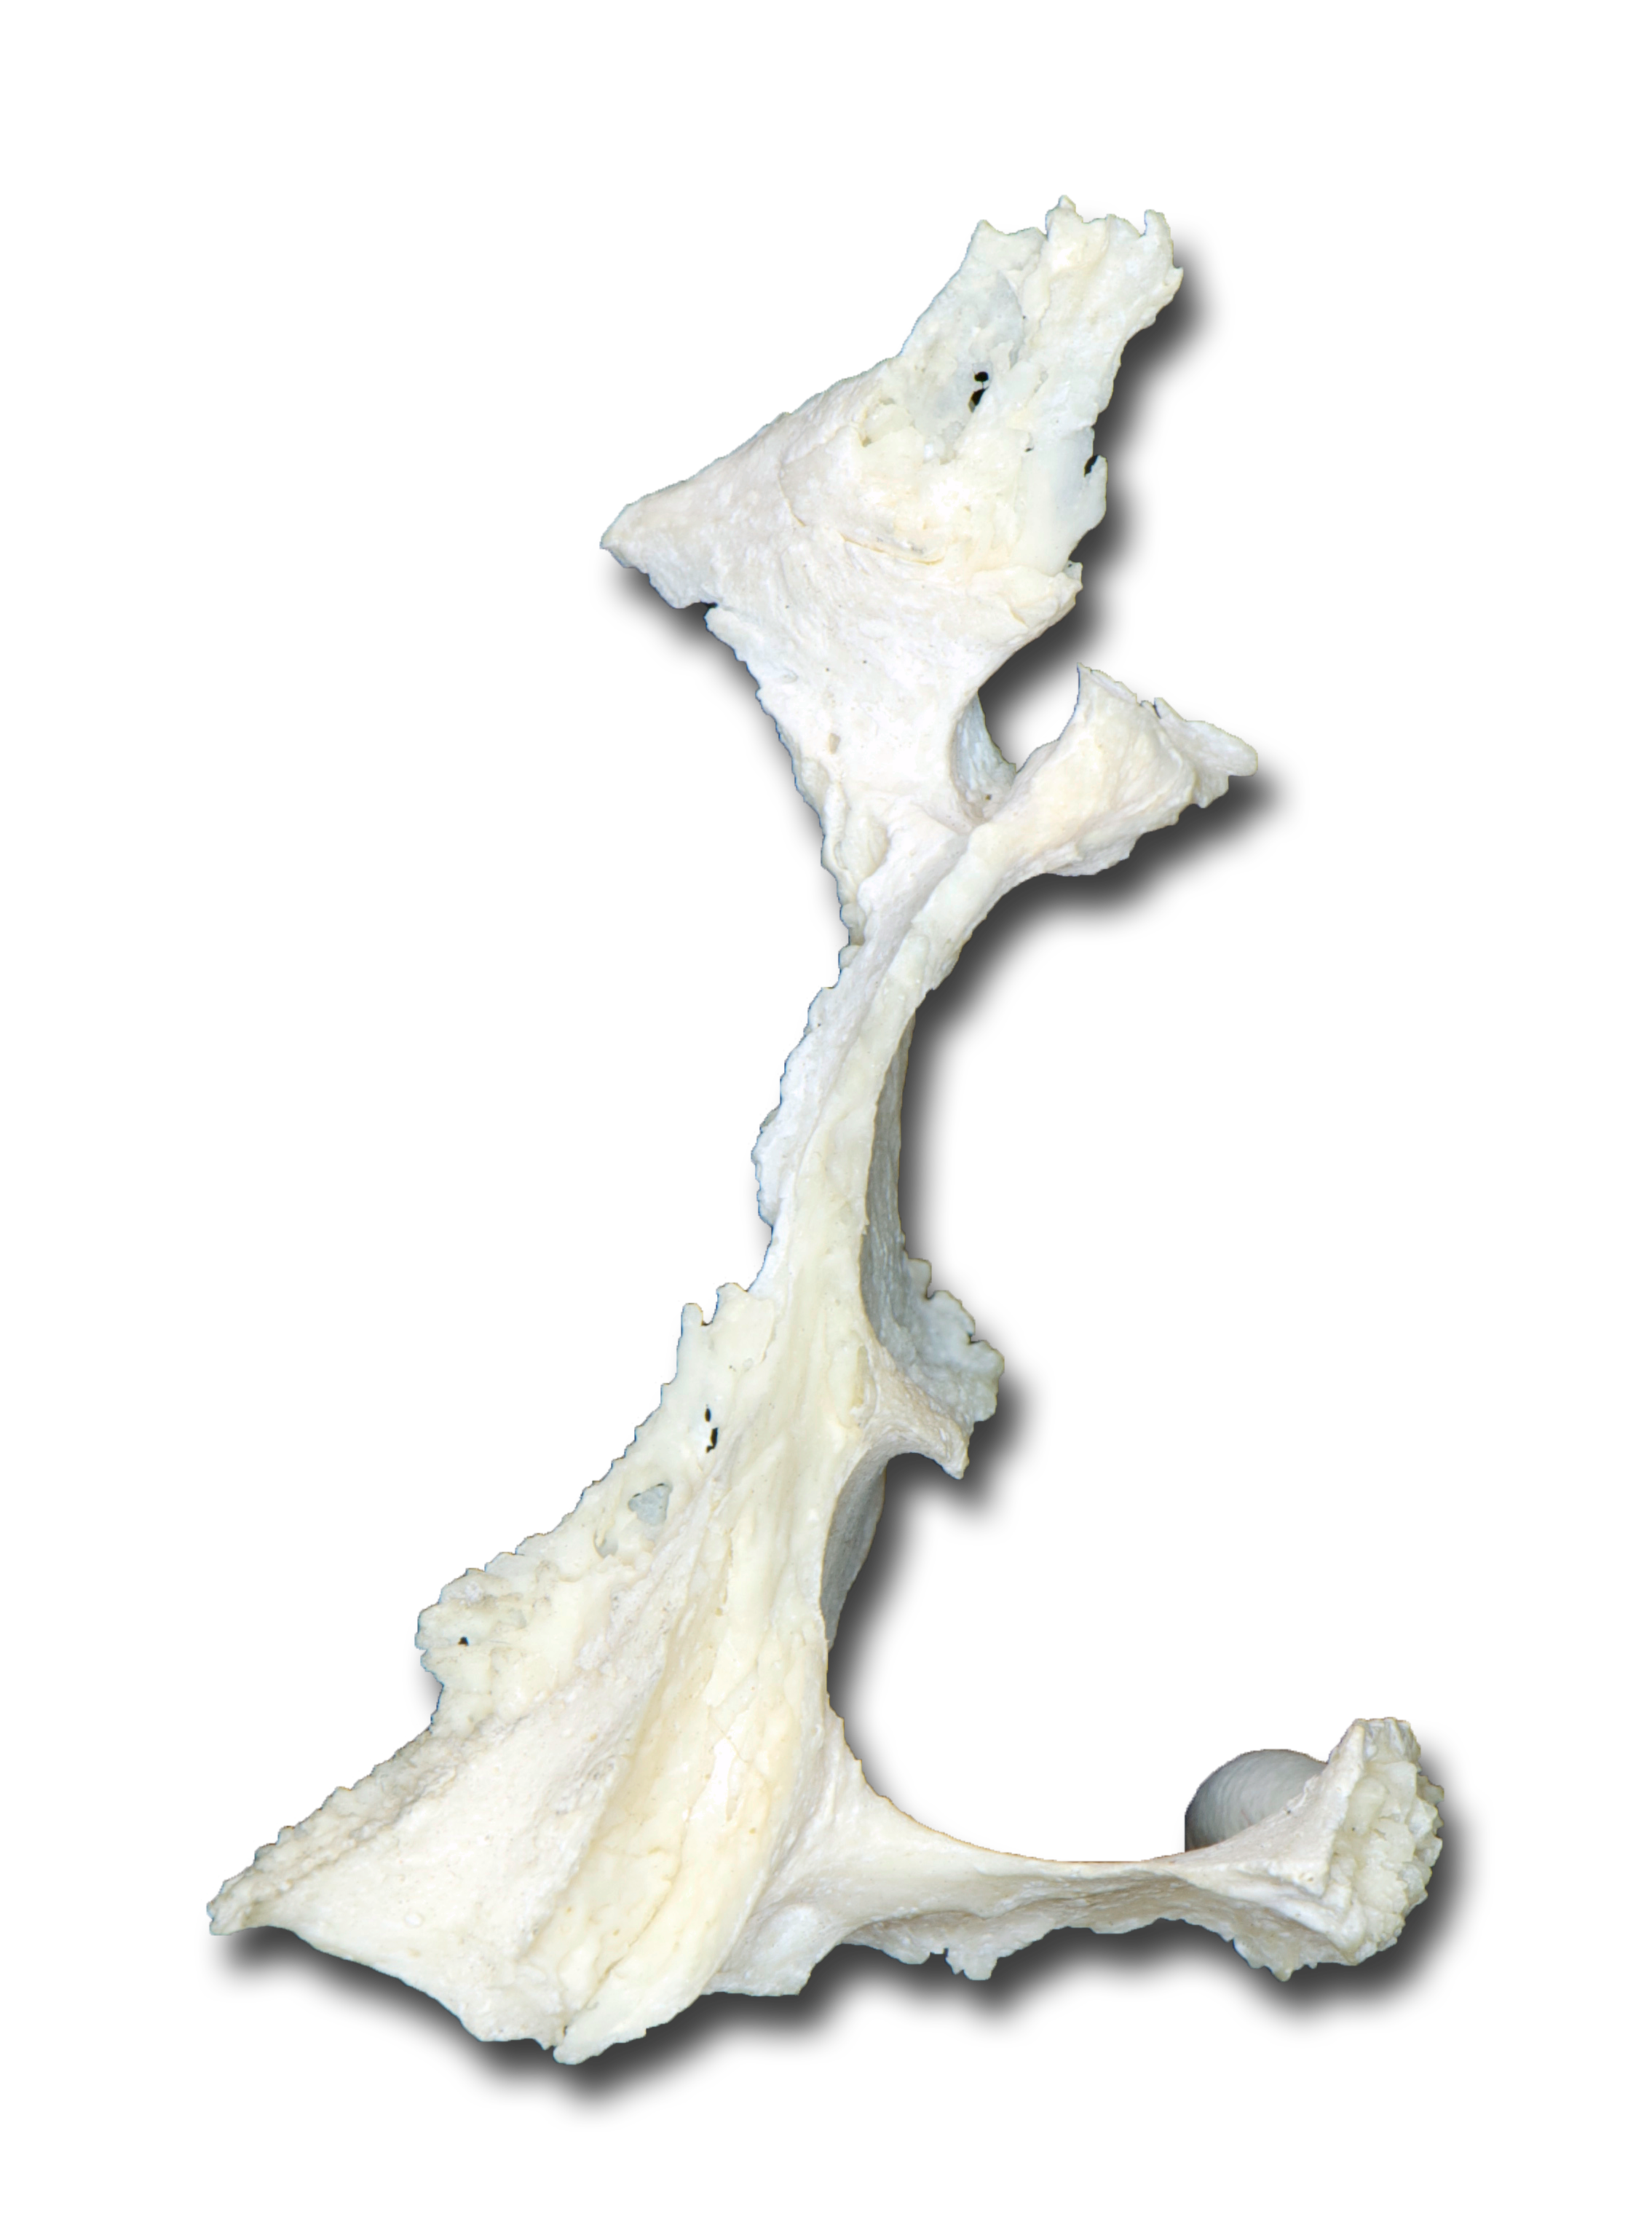 Palatine Bone - Posterior View